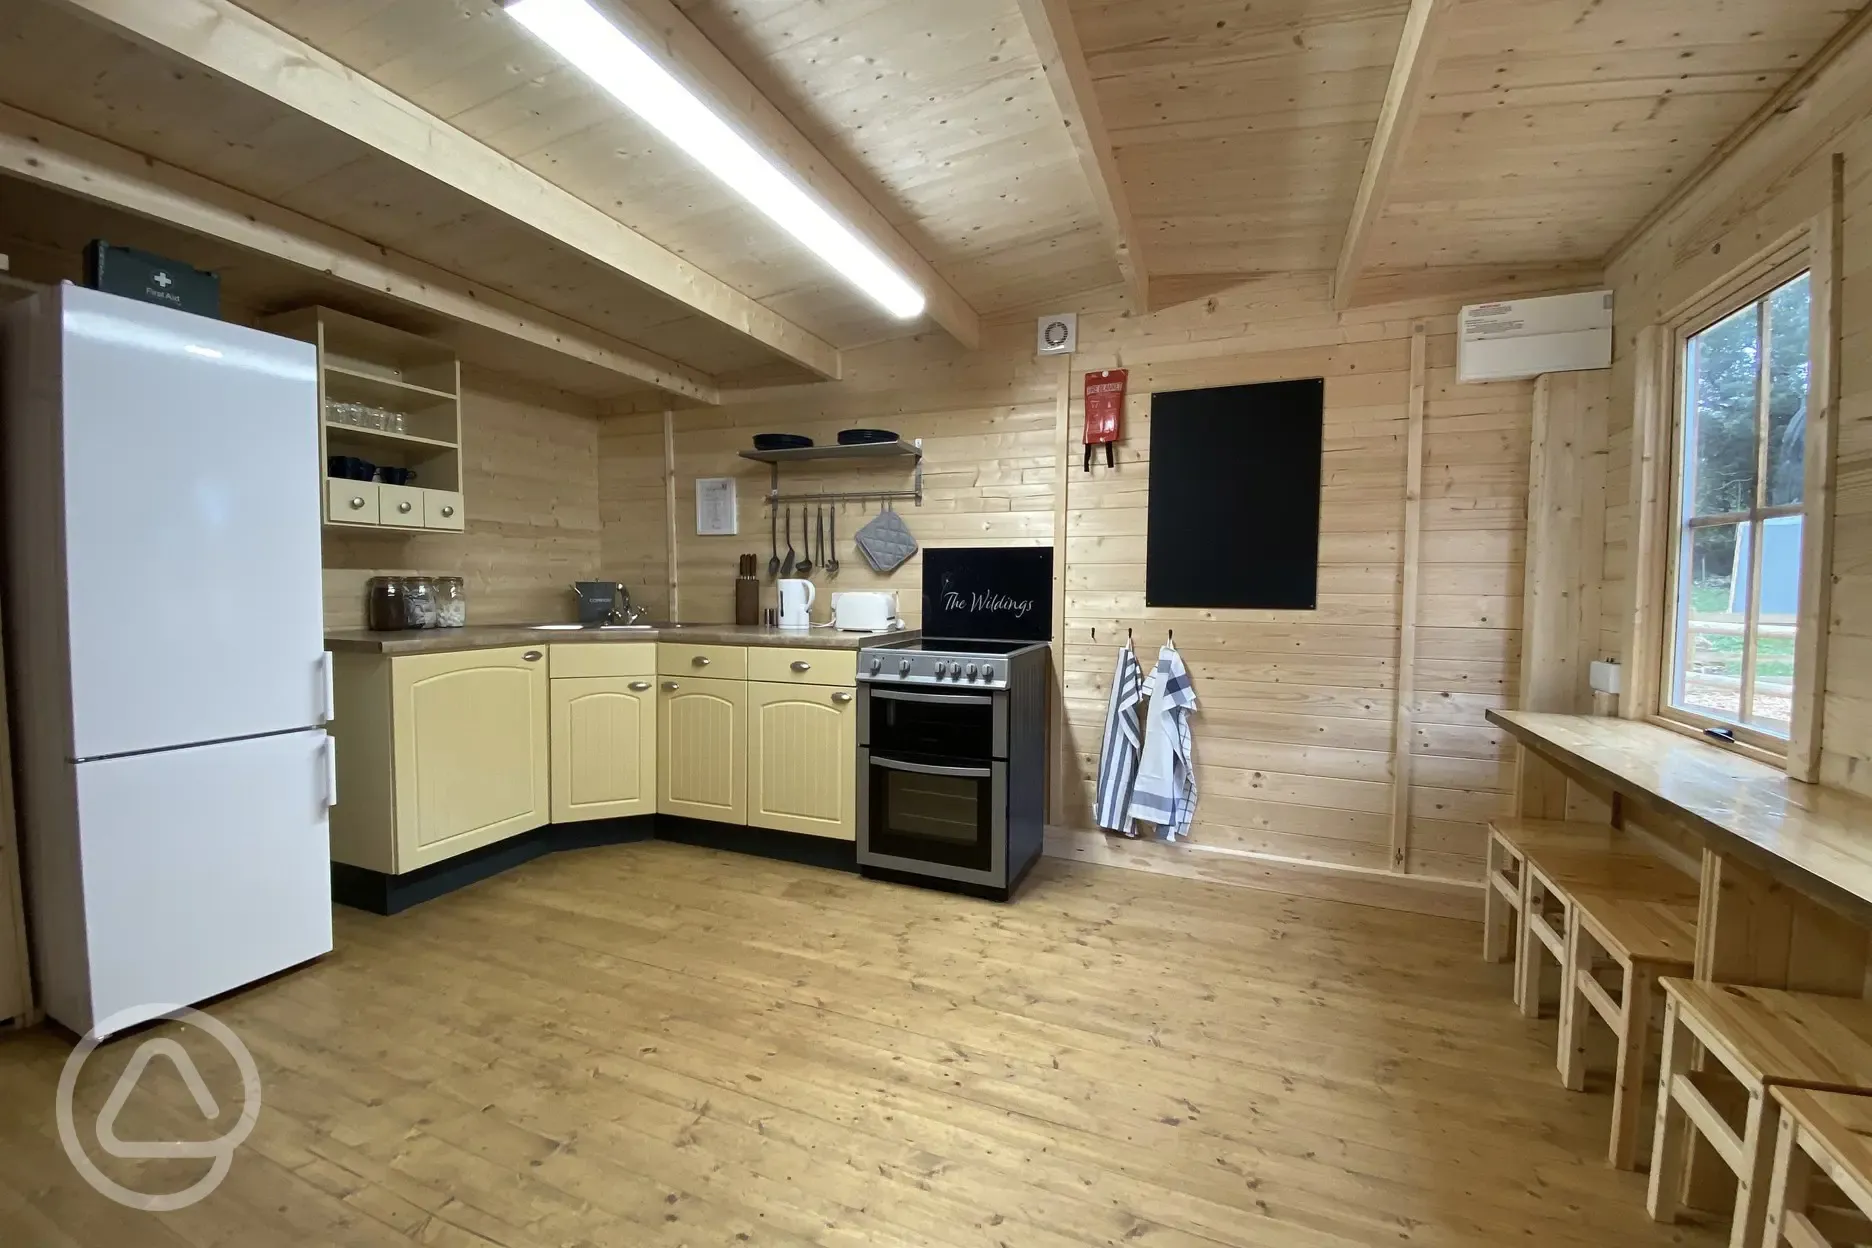 Communal kitchen area